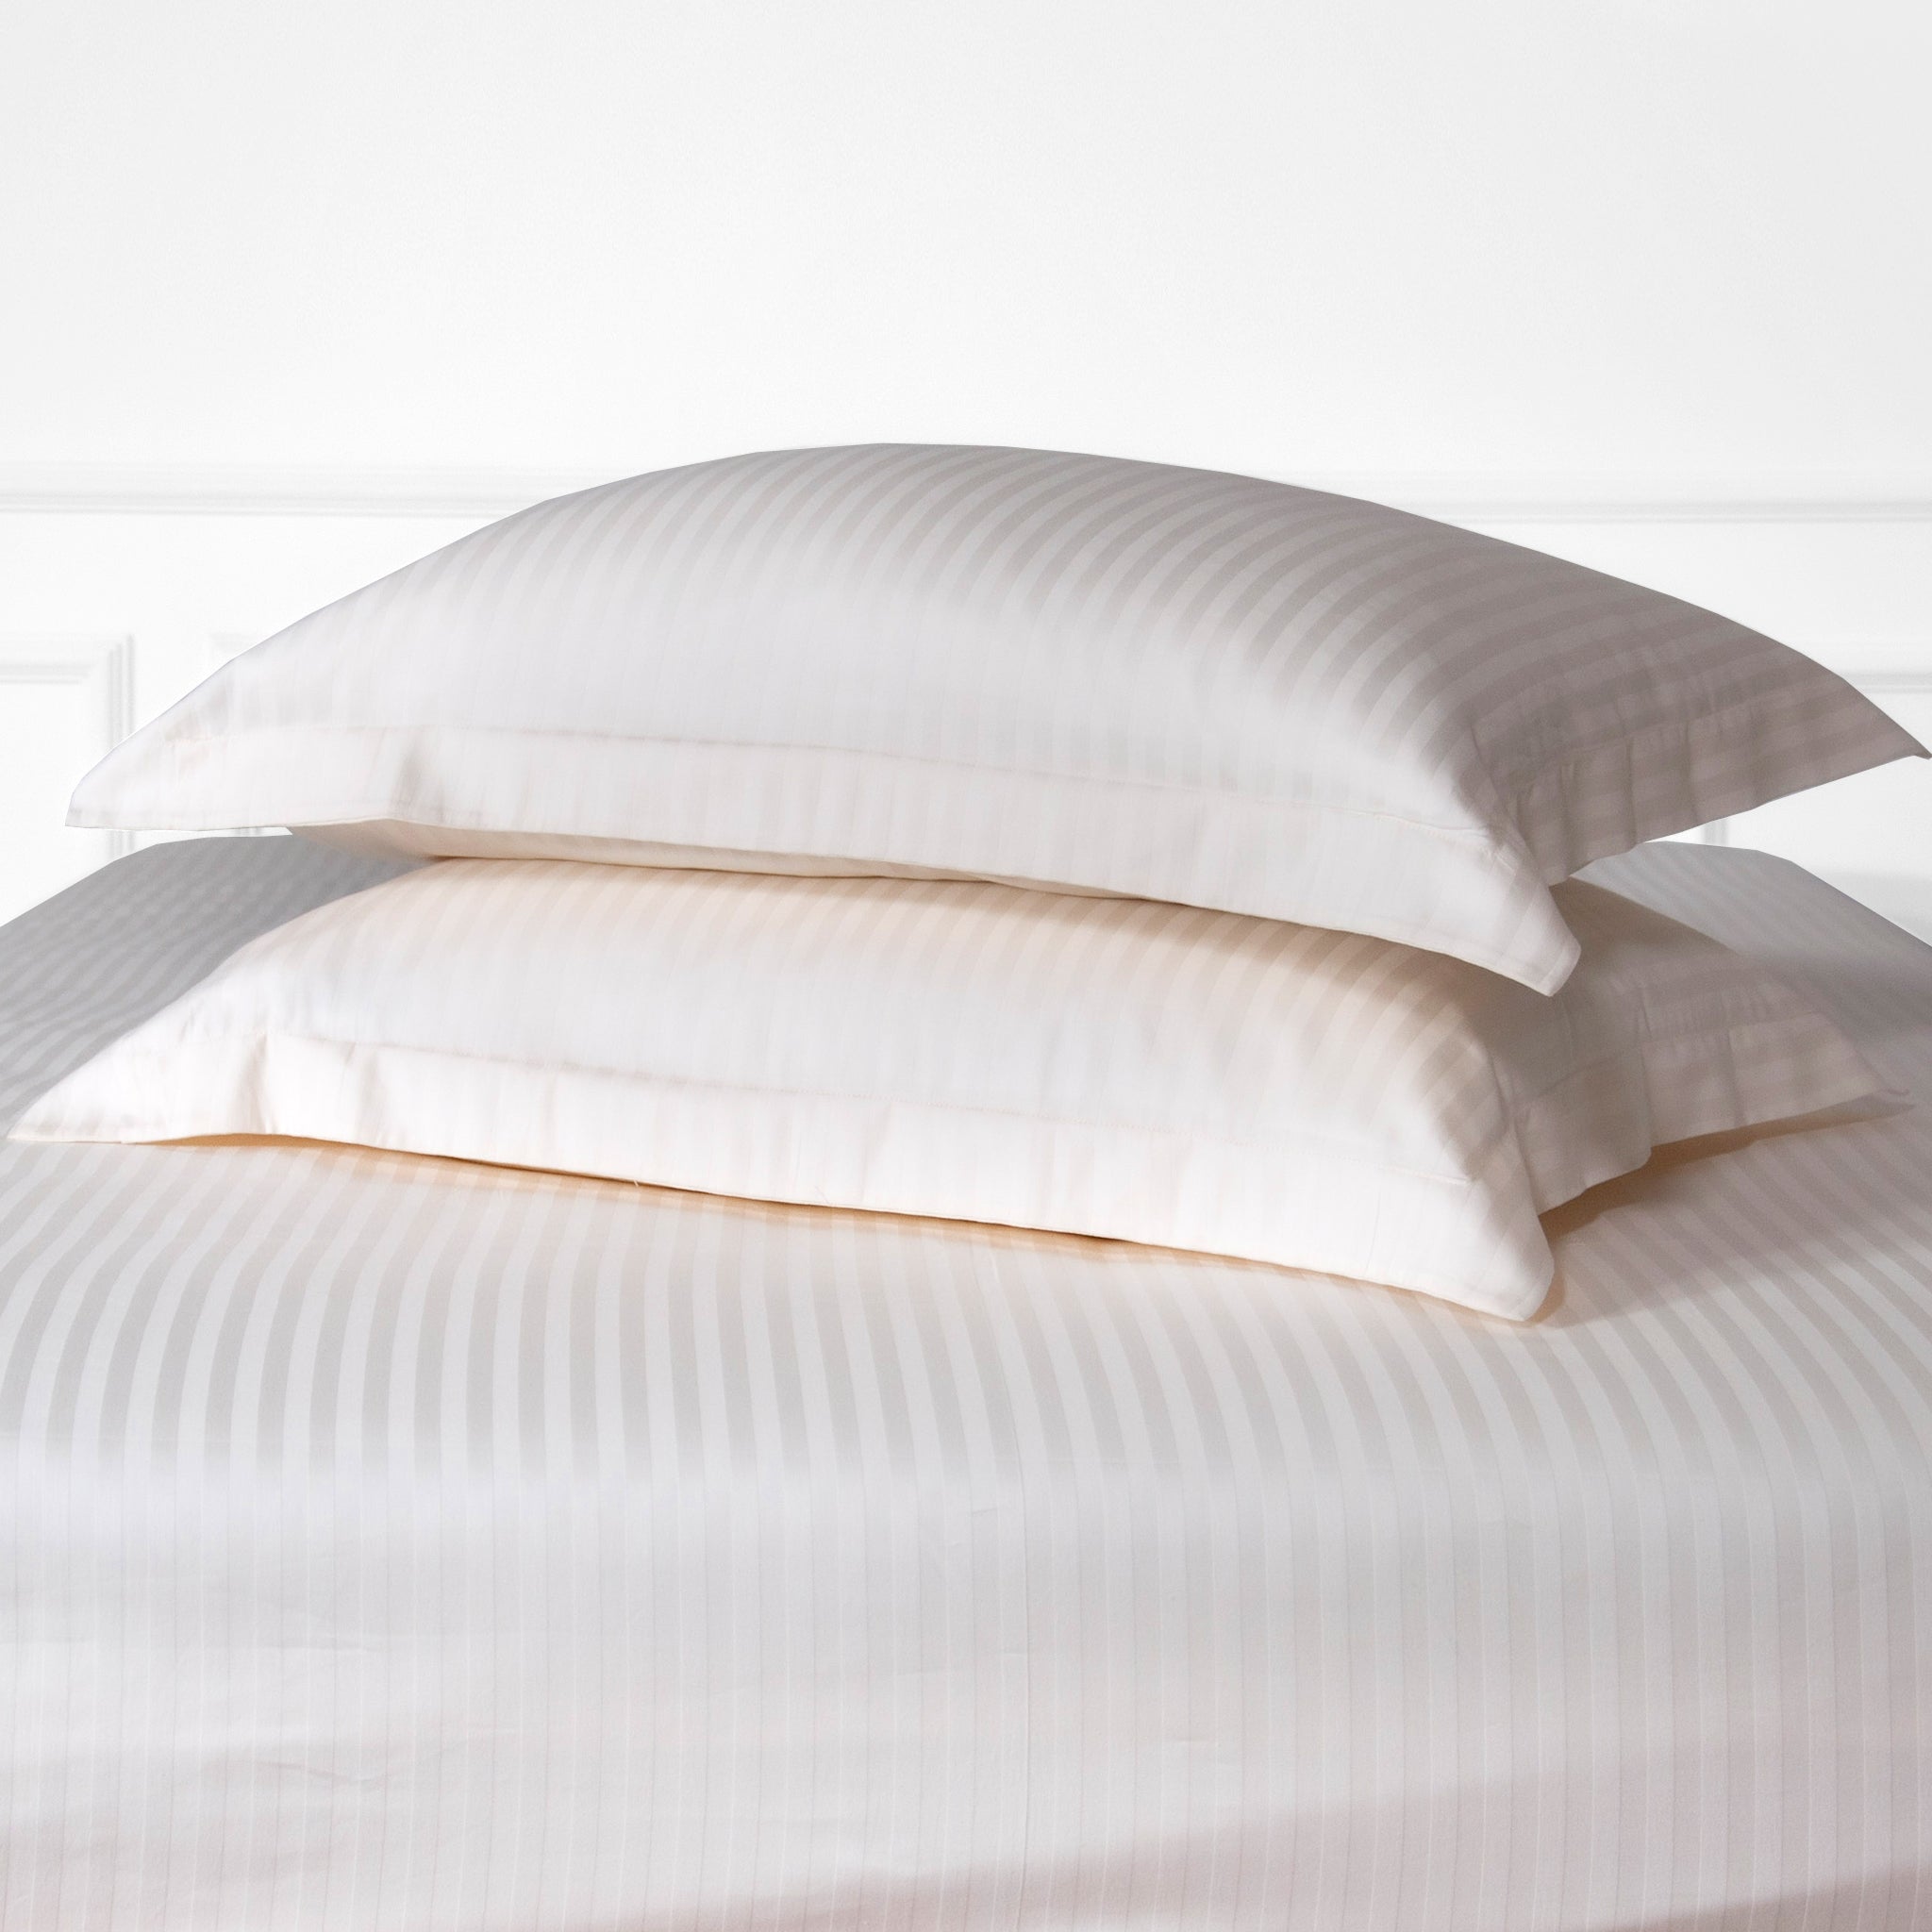 Pearl White Striped 100% Cotton Sateen Oxford Pillowcase